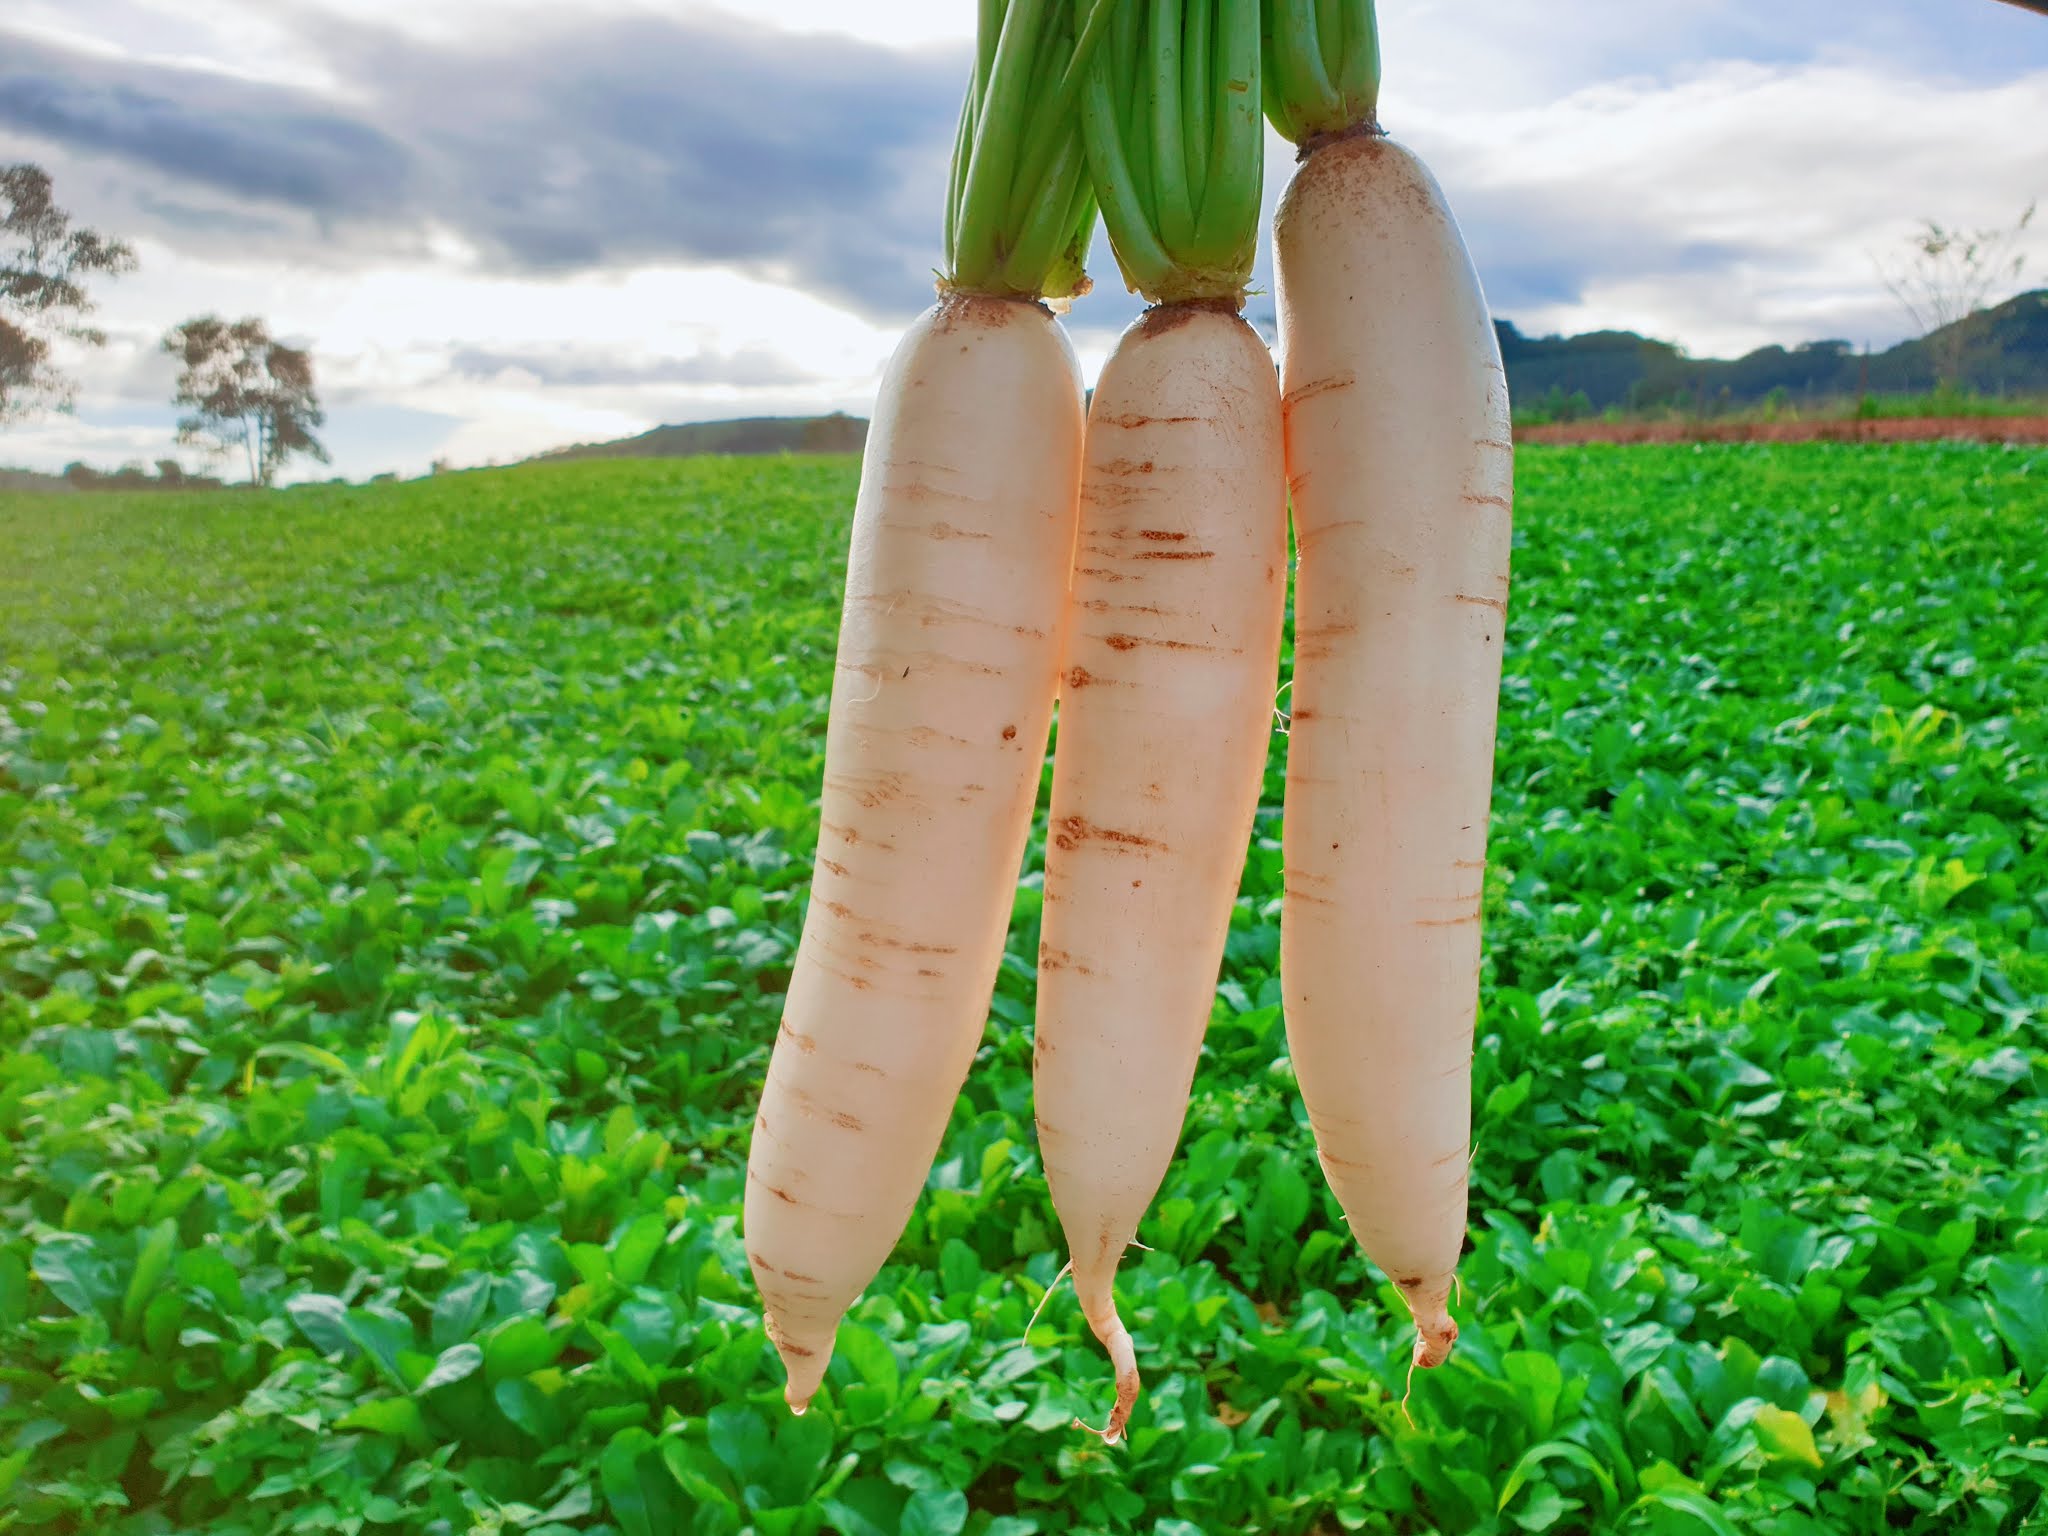 Vai trò và thành phần dinh dưỡng của củ cải